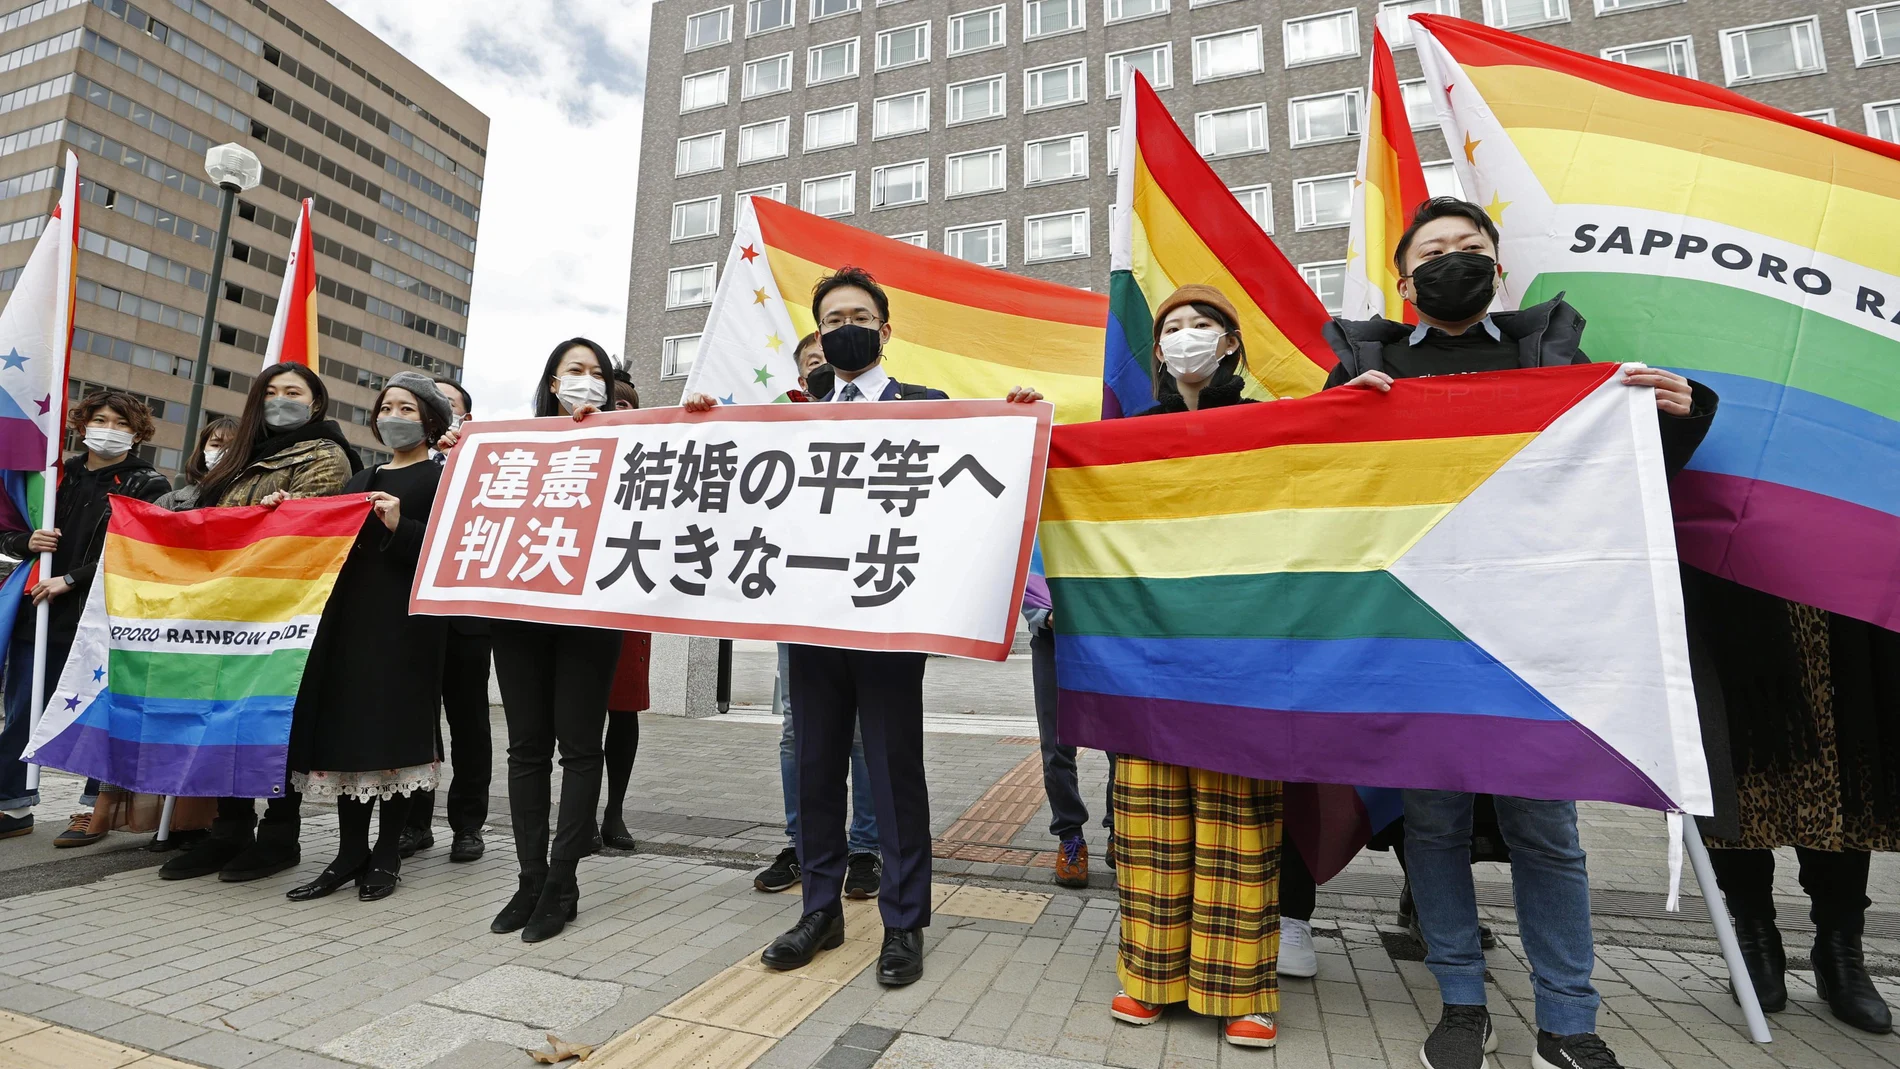 Los abogados y partidarios de los demandantes sostienen banderas de arcoíris y una pancarta que dice: "Sentencia inconstitucional"